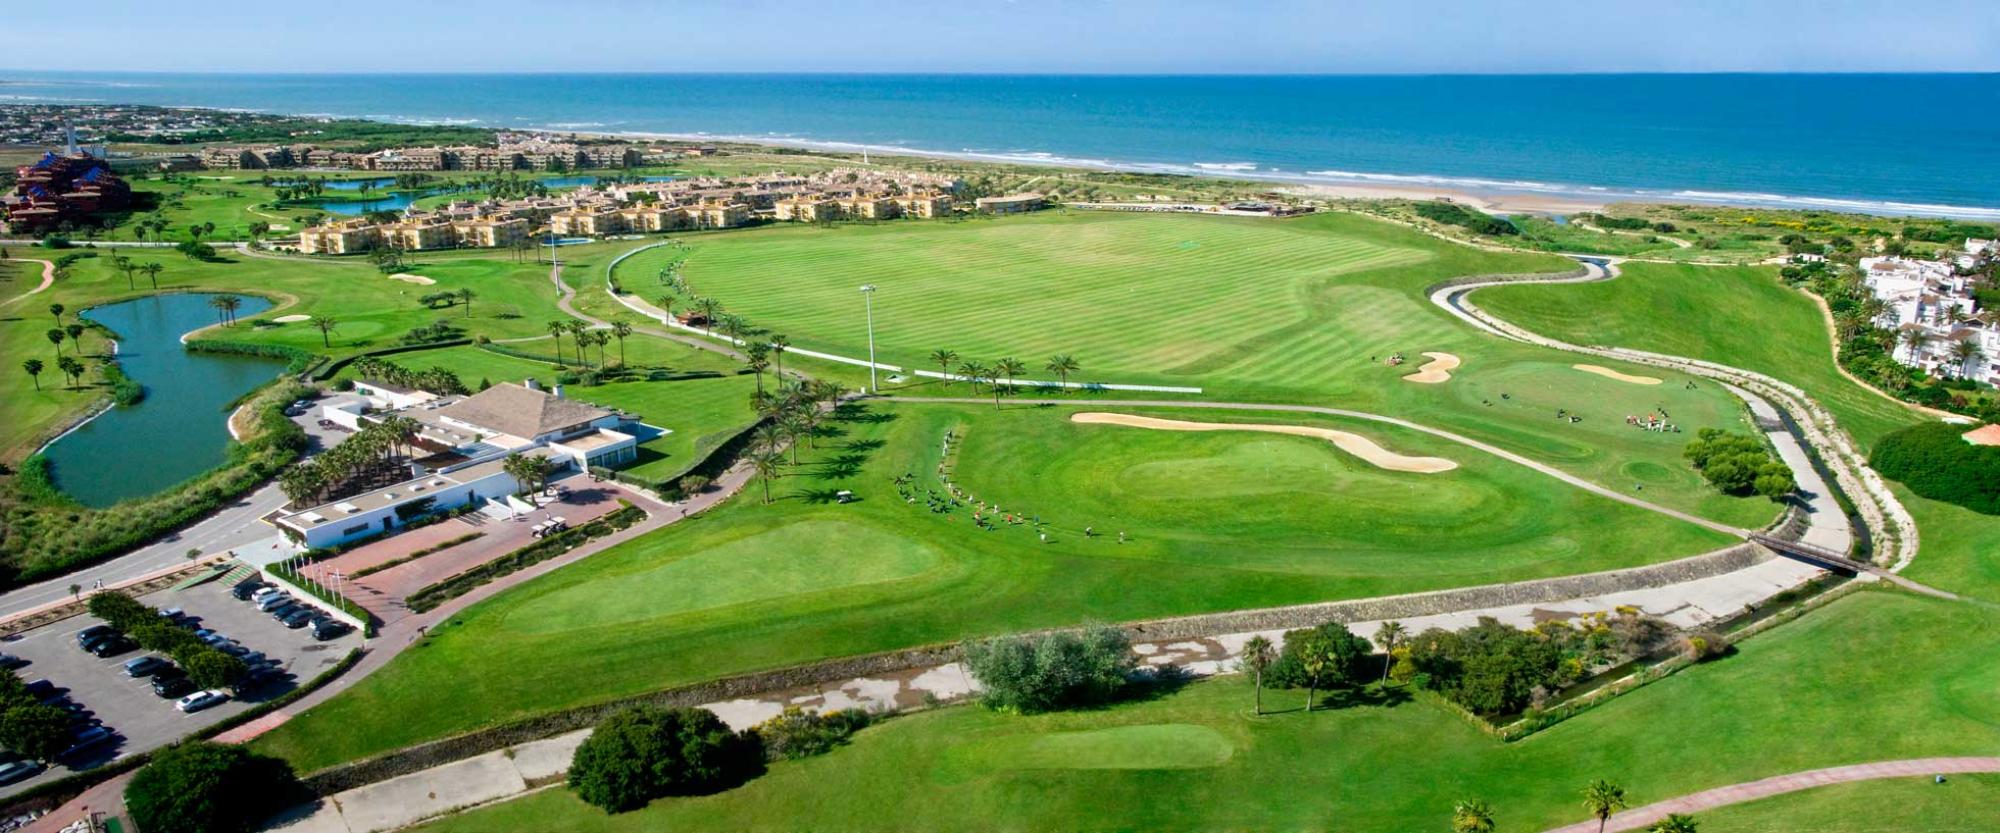 The Costa Ballena Ocean Golf Club's scenic golf course within magnificent Costa de la Luz.